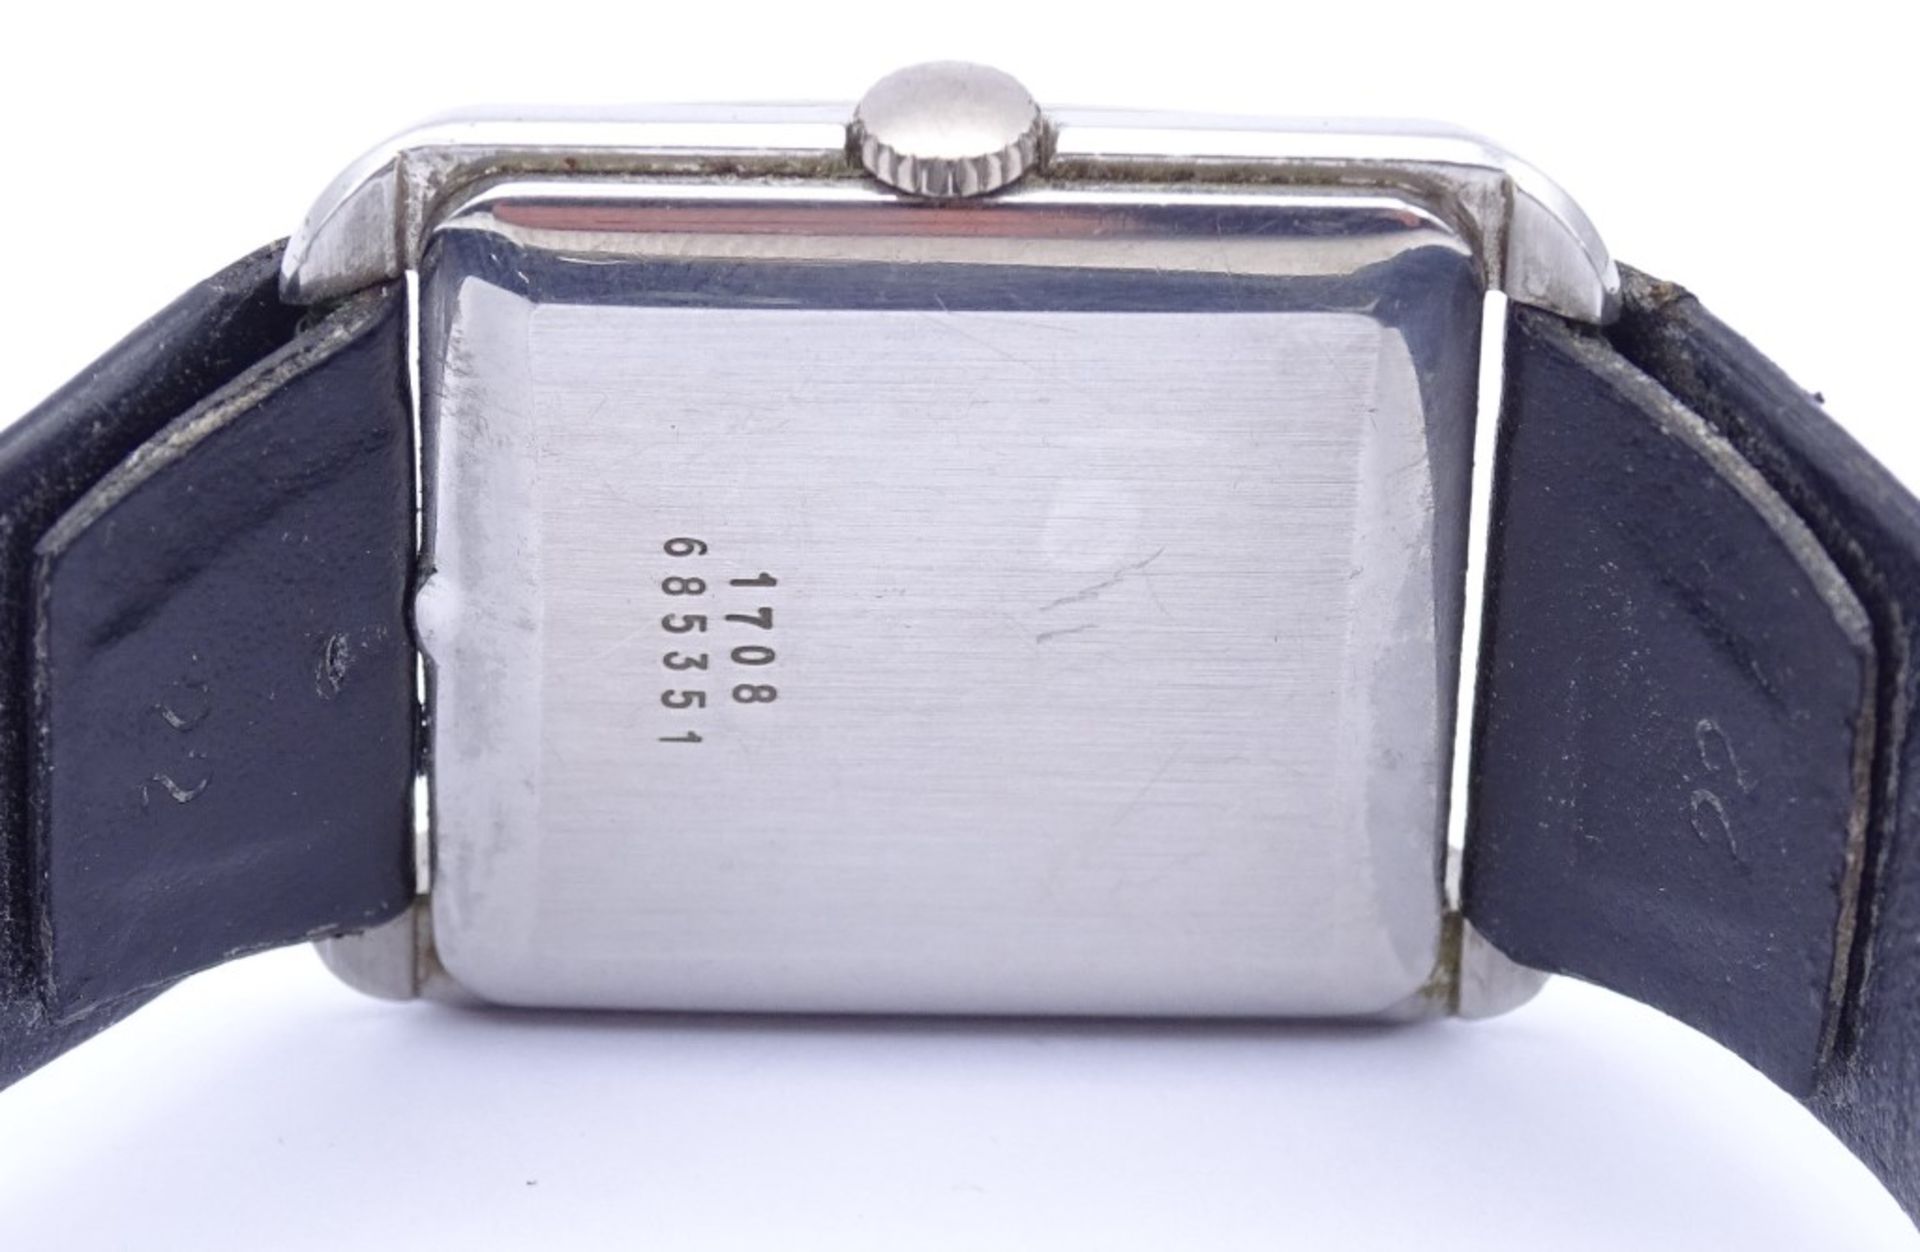 Vintage Armbanduhr "Baume & Mercier", Cal. 320, mechanisch (Handaufzug),Werk läuft, - Bild 6 aus 6